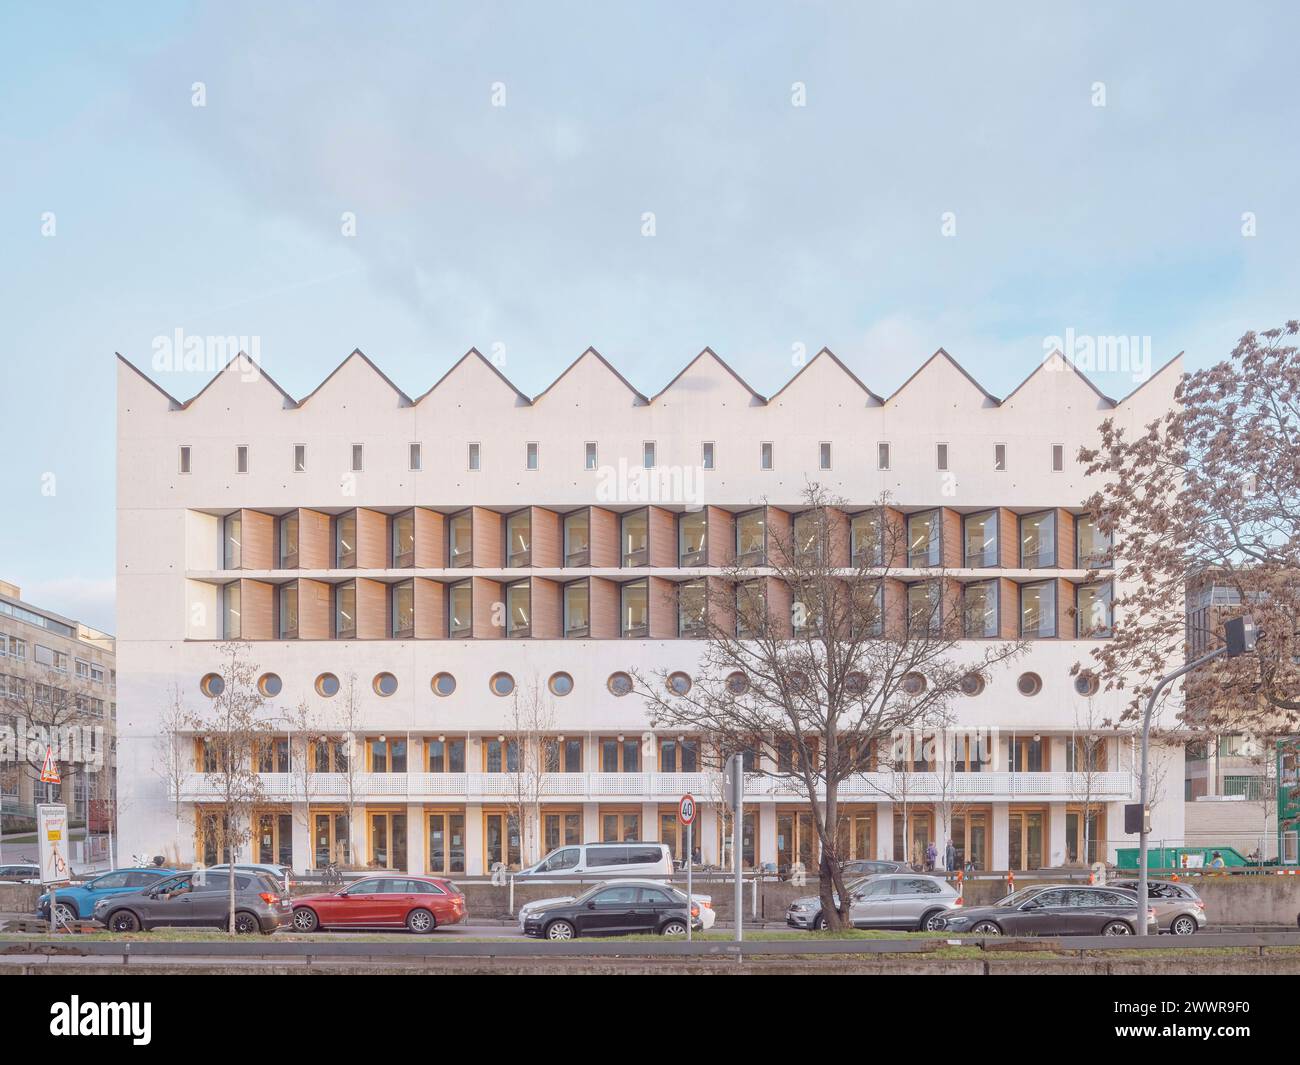 Vordere Höhe mit Nordlichtdach und Konrad-Adenauer-Straße. Anlage zur Württembergischen Staatsbibliothek in Stuttgart, Stuttgart. Architekt: L Stockfoto